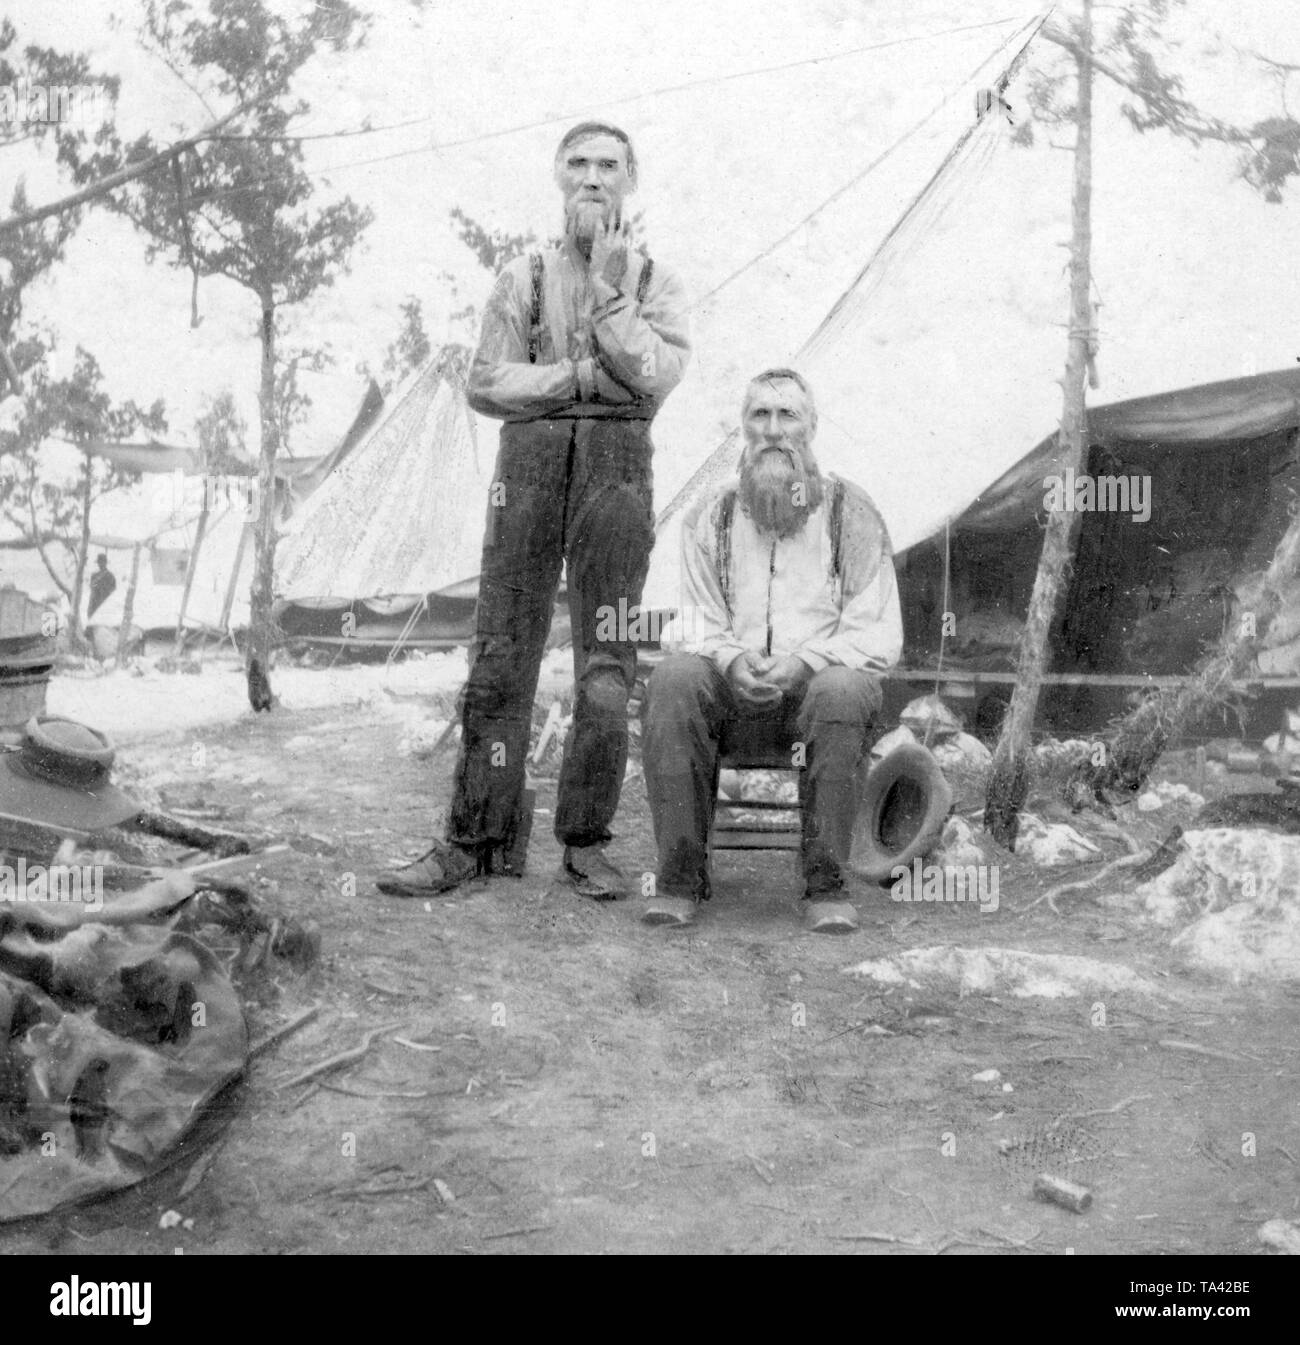 Boers capturés en provenance d'Afrique du Sud, camp de concentration, 1899-1902 : Boers dans un camp de prisonniers sur les Bermudes - deux 70 ans prisonniers. Banque D'Images